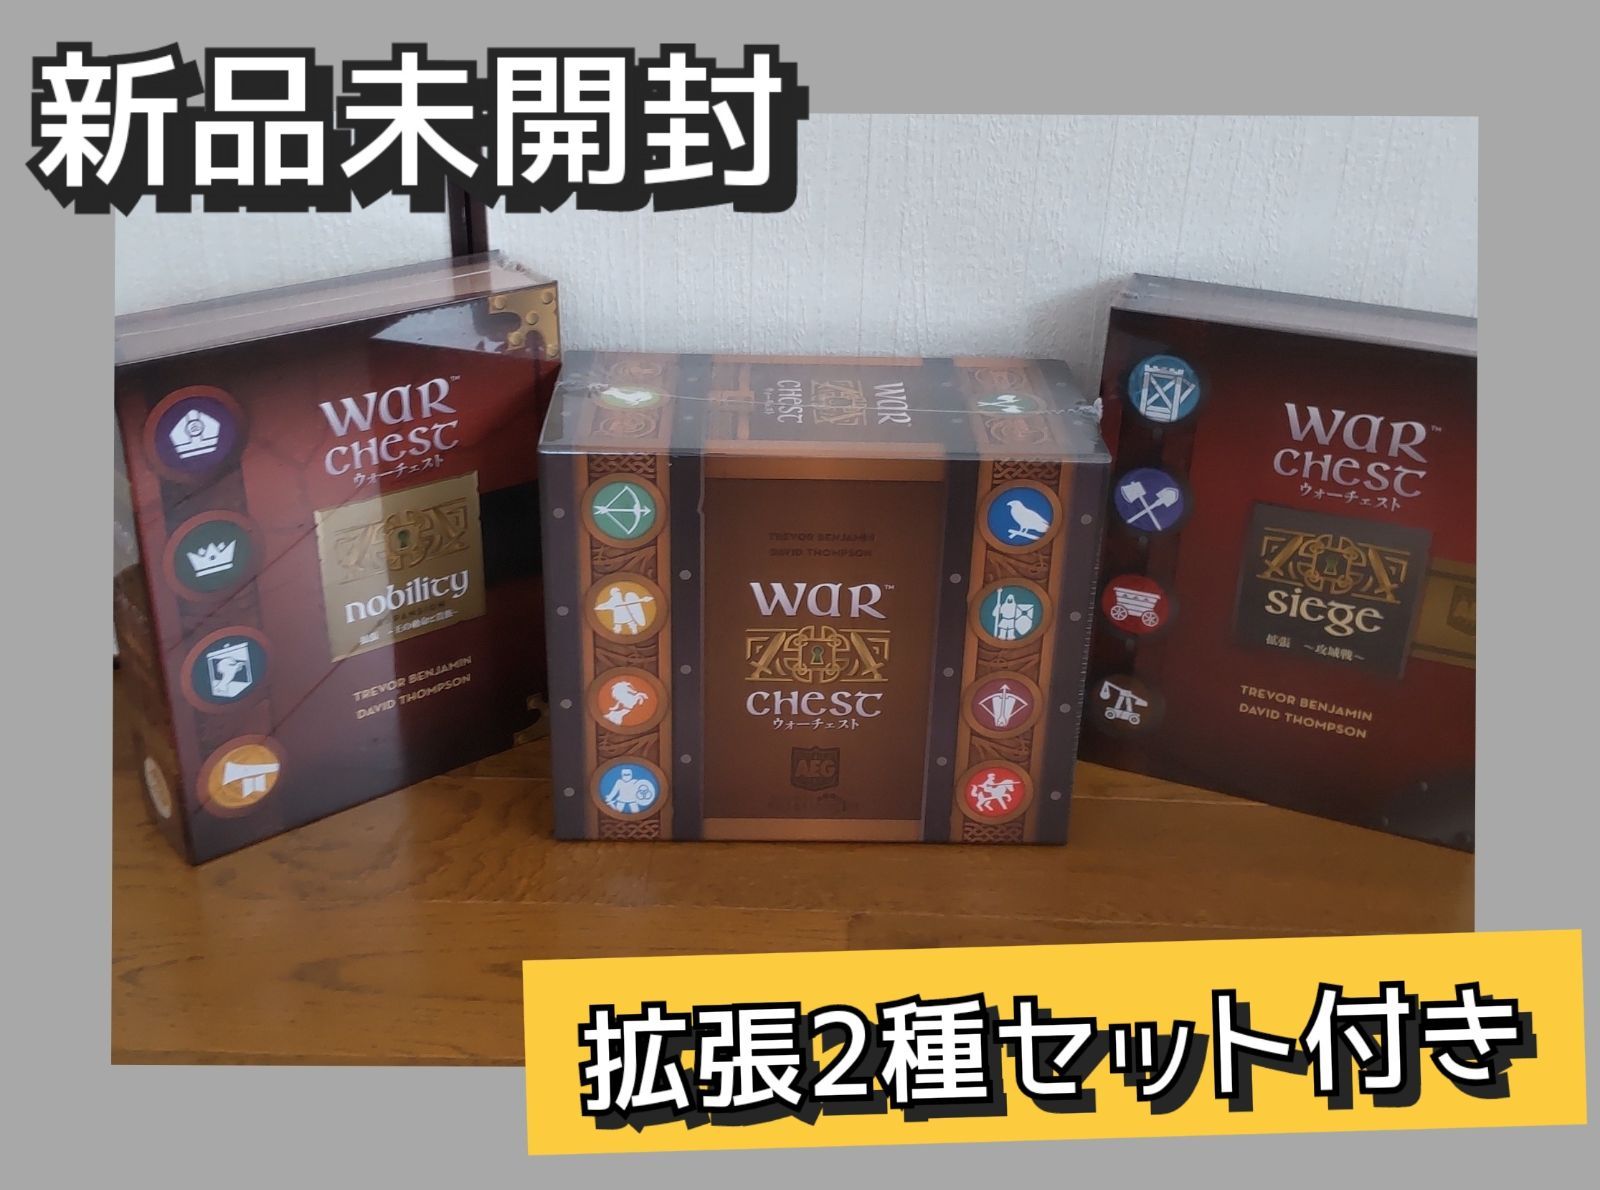 ウォーチェスト日本語版基本セット＋拡張2種(攻城戦・王の勅命と貴族